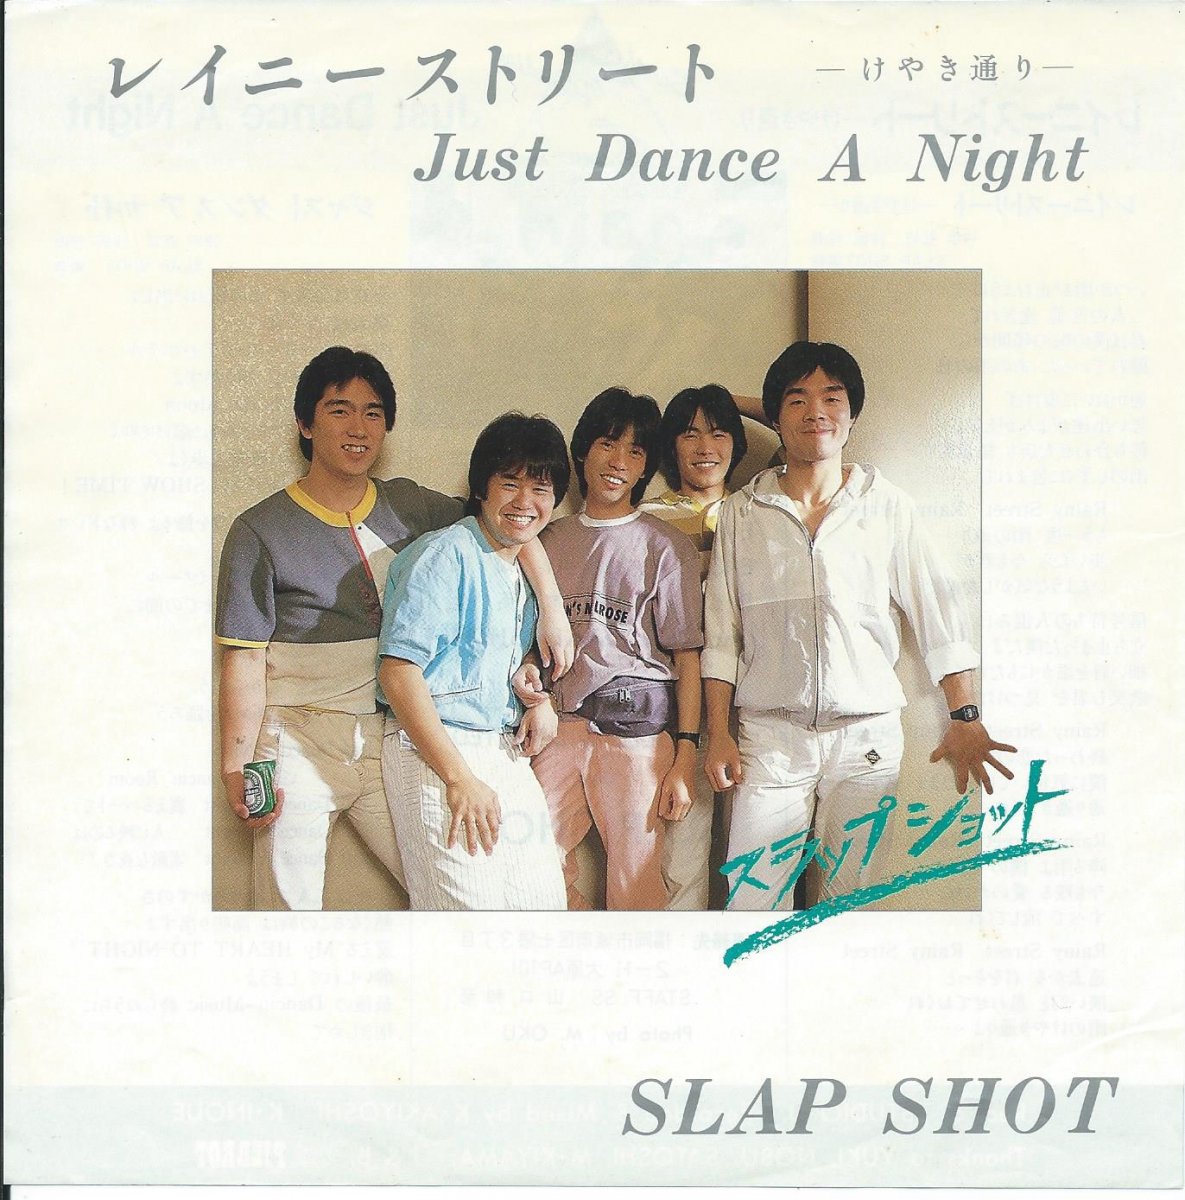 スラップ・ショット SLAP SHOT / レイニーストリート -けやき通り- RAINY STREET / ジャスト・ダンス・ア・ナイト JUST DANCE A NIGHT (7